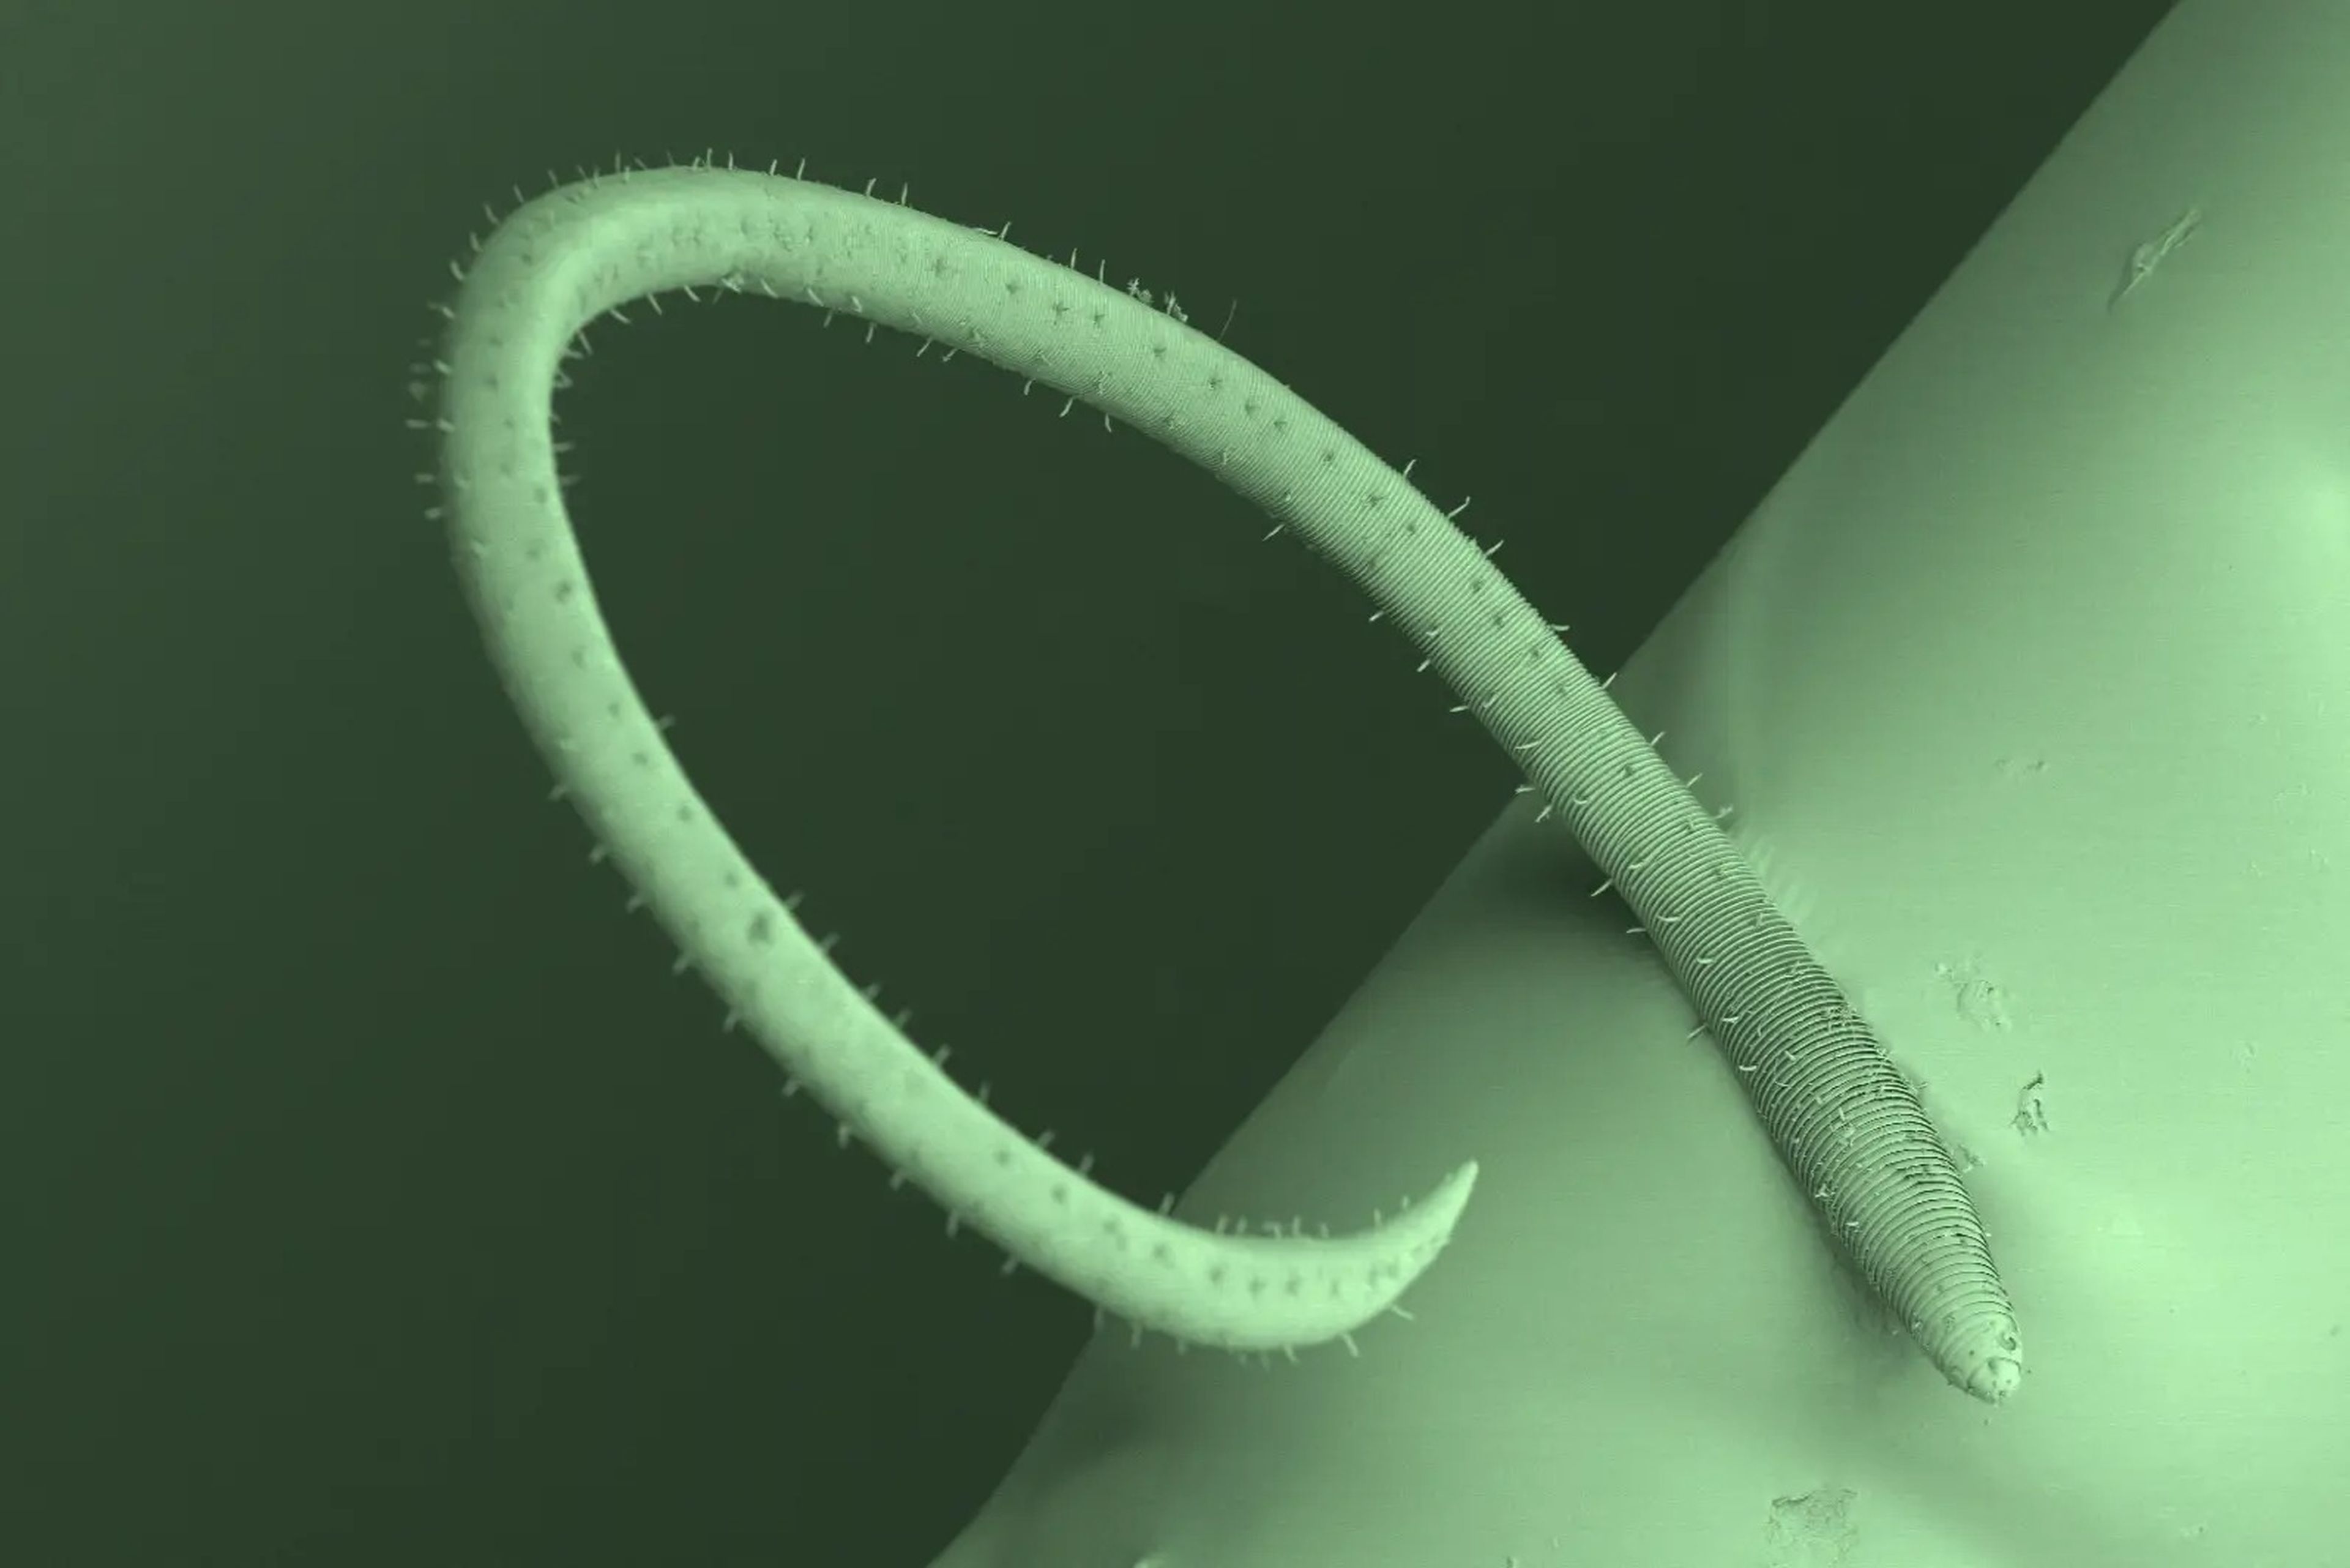 Los nematodos desmodóridos están recubiertos de diminutos órganos sensoriales similares a pelos que les ayudan a orientarse en su entorno.